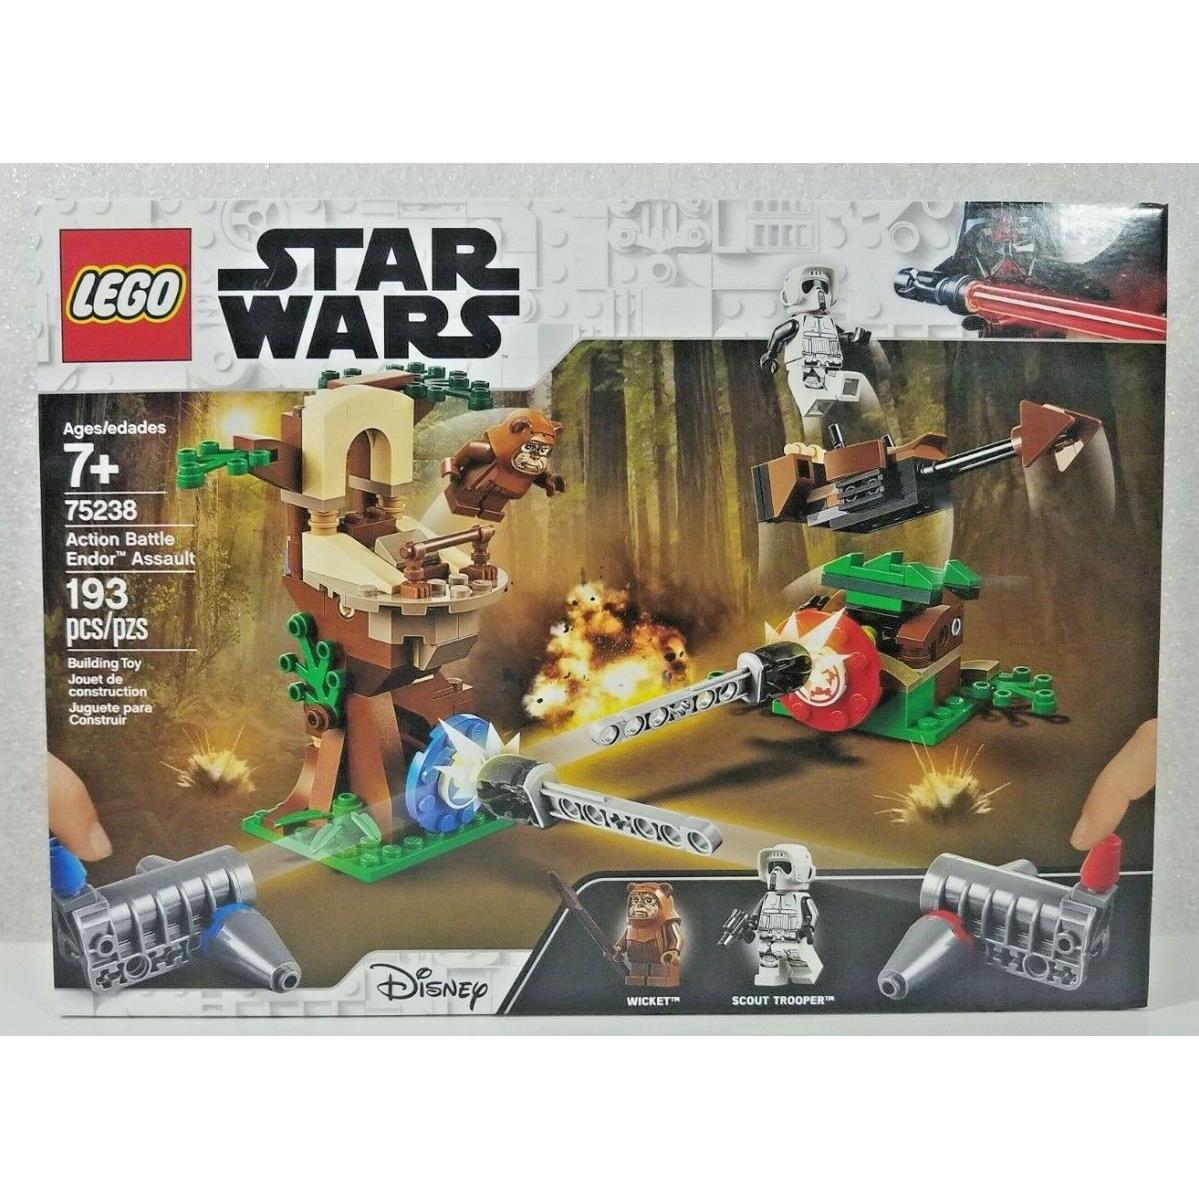 Lego Star Wars Action Battle Endor Assault Set 75238 Retired